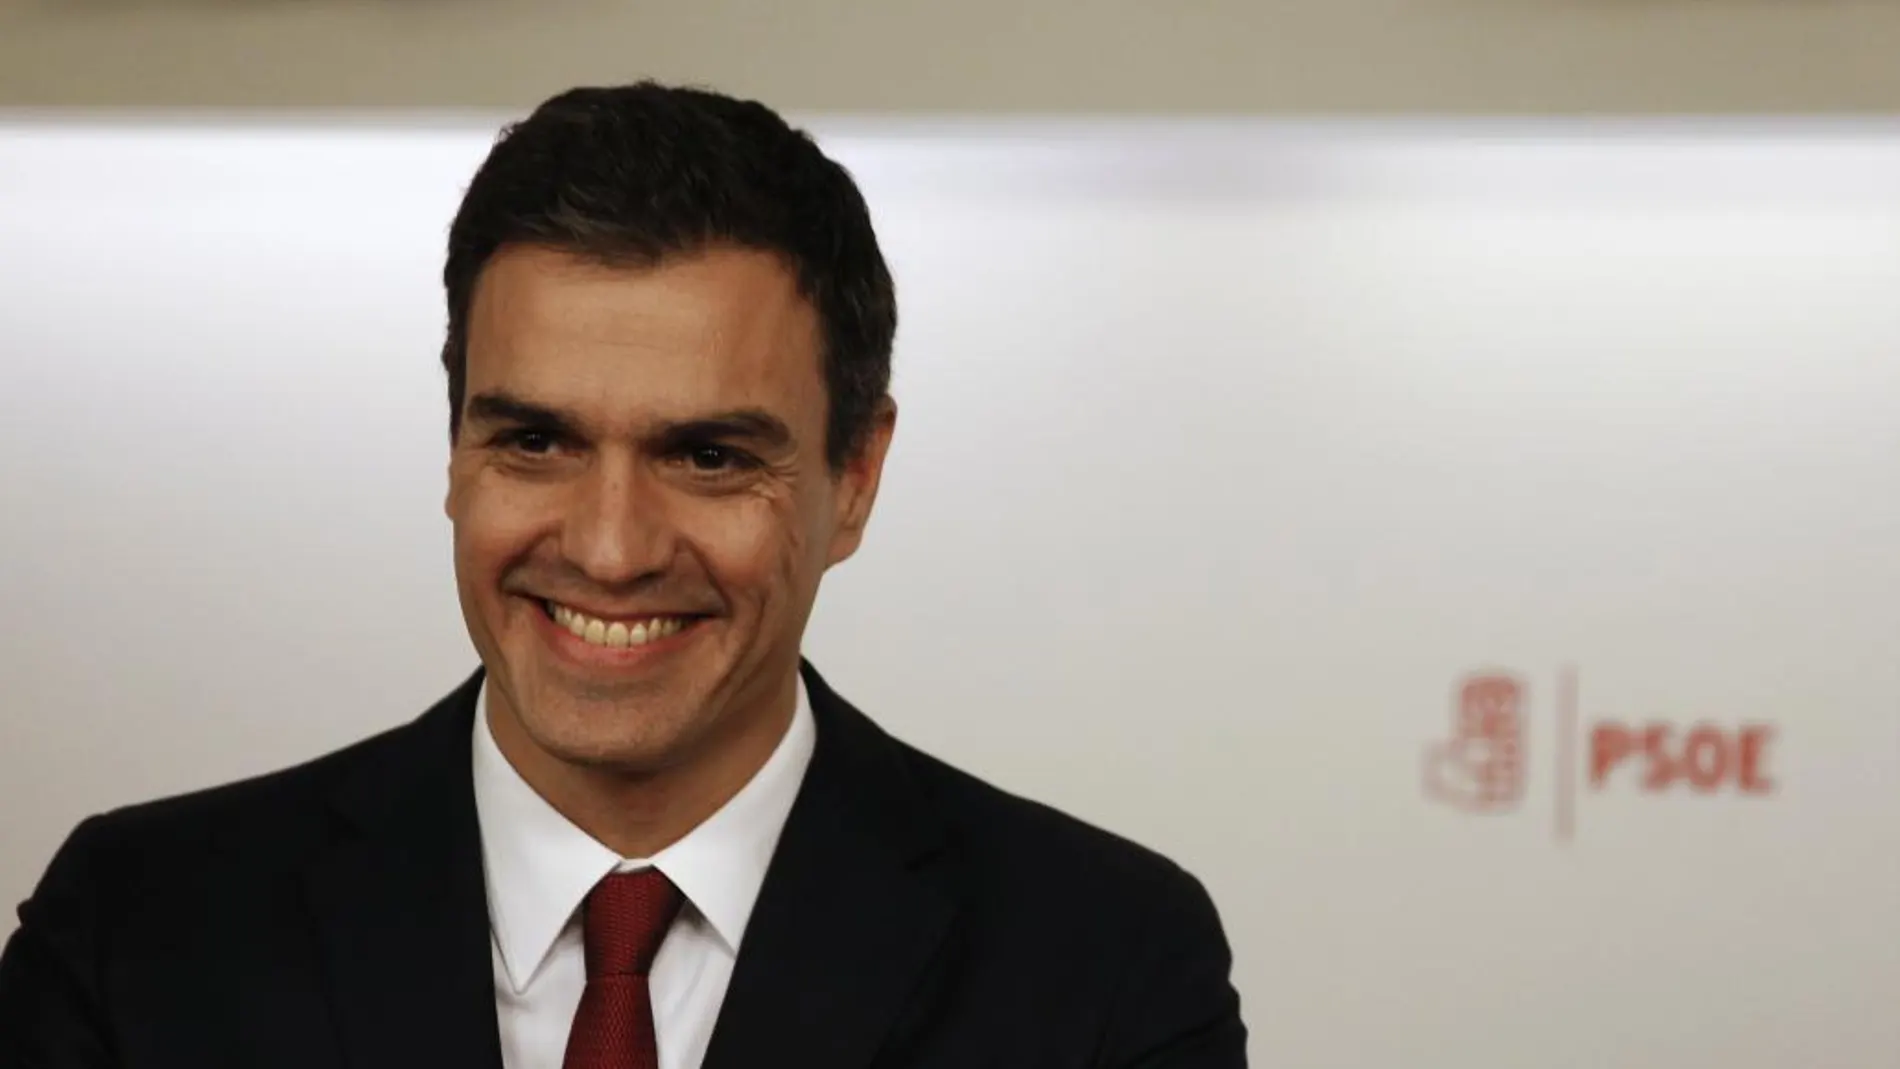 El líder del PSOE, Pedro Sanchez, ha llamado por teléfono a Albert Rivera